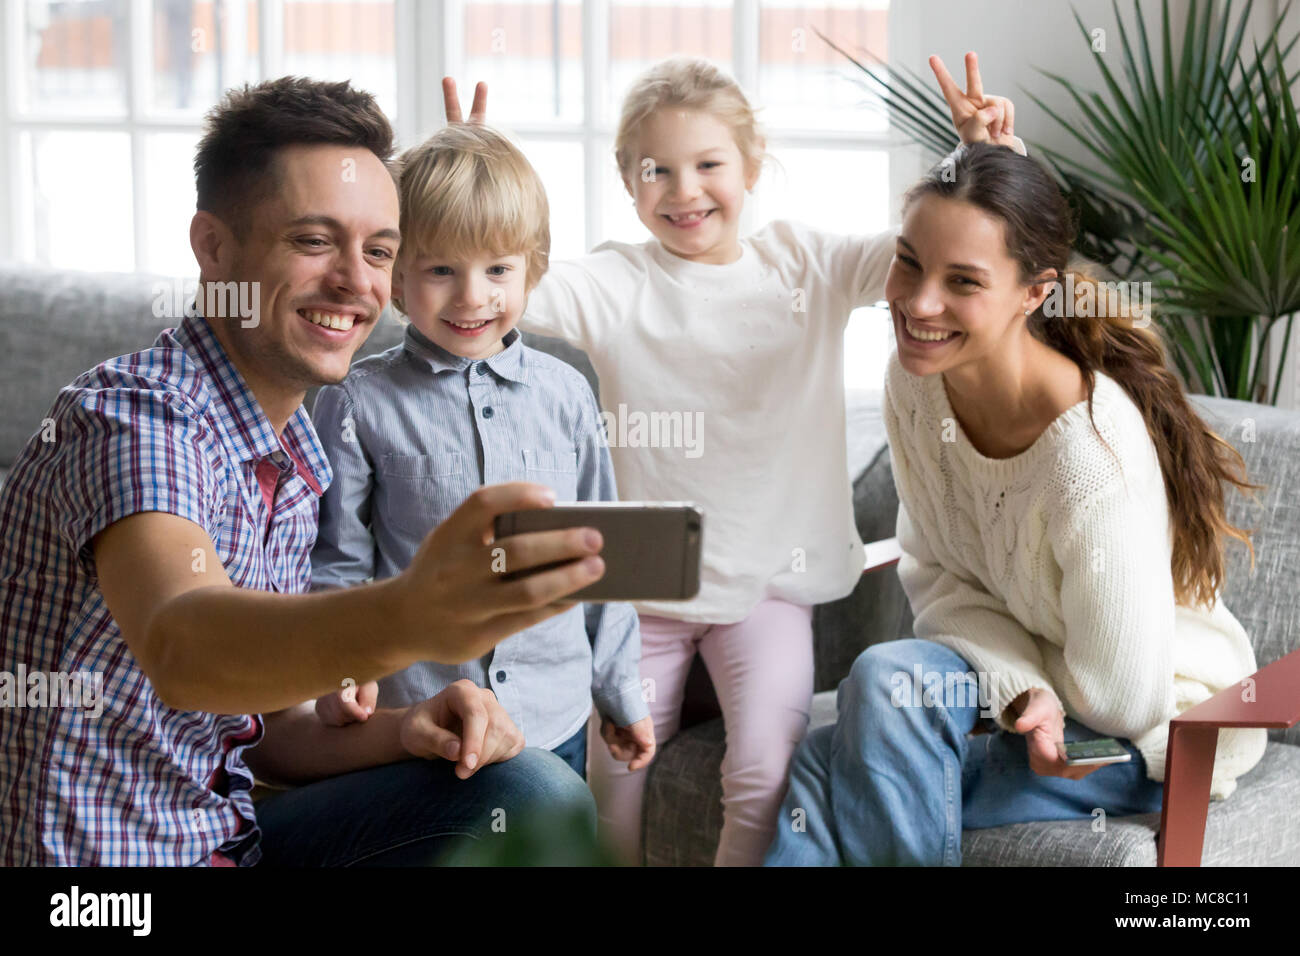 Ragazza sorridente rendendo la madre e il fratello bunny orecchie mentre padre tenendo la famiglia felice selfie, giocoso i bambini adottati avendo divertimento che posano per una foto divertente Foto Stock